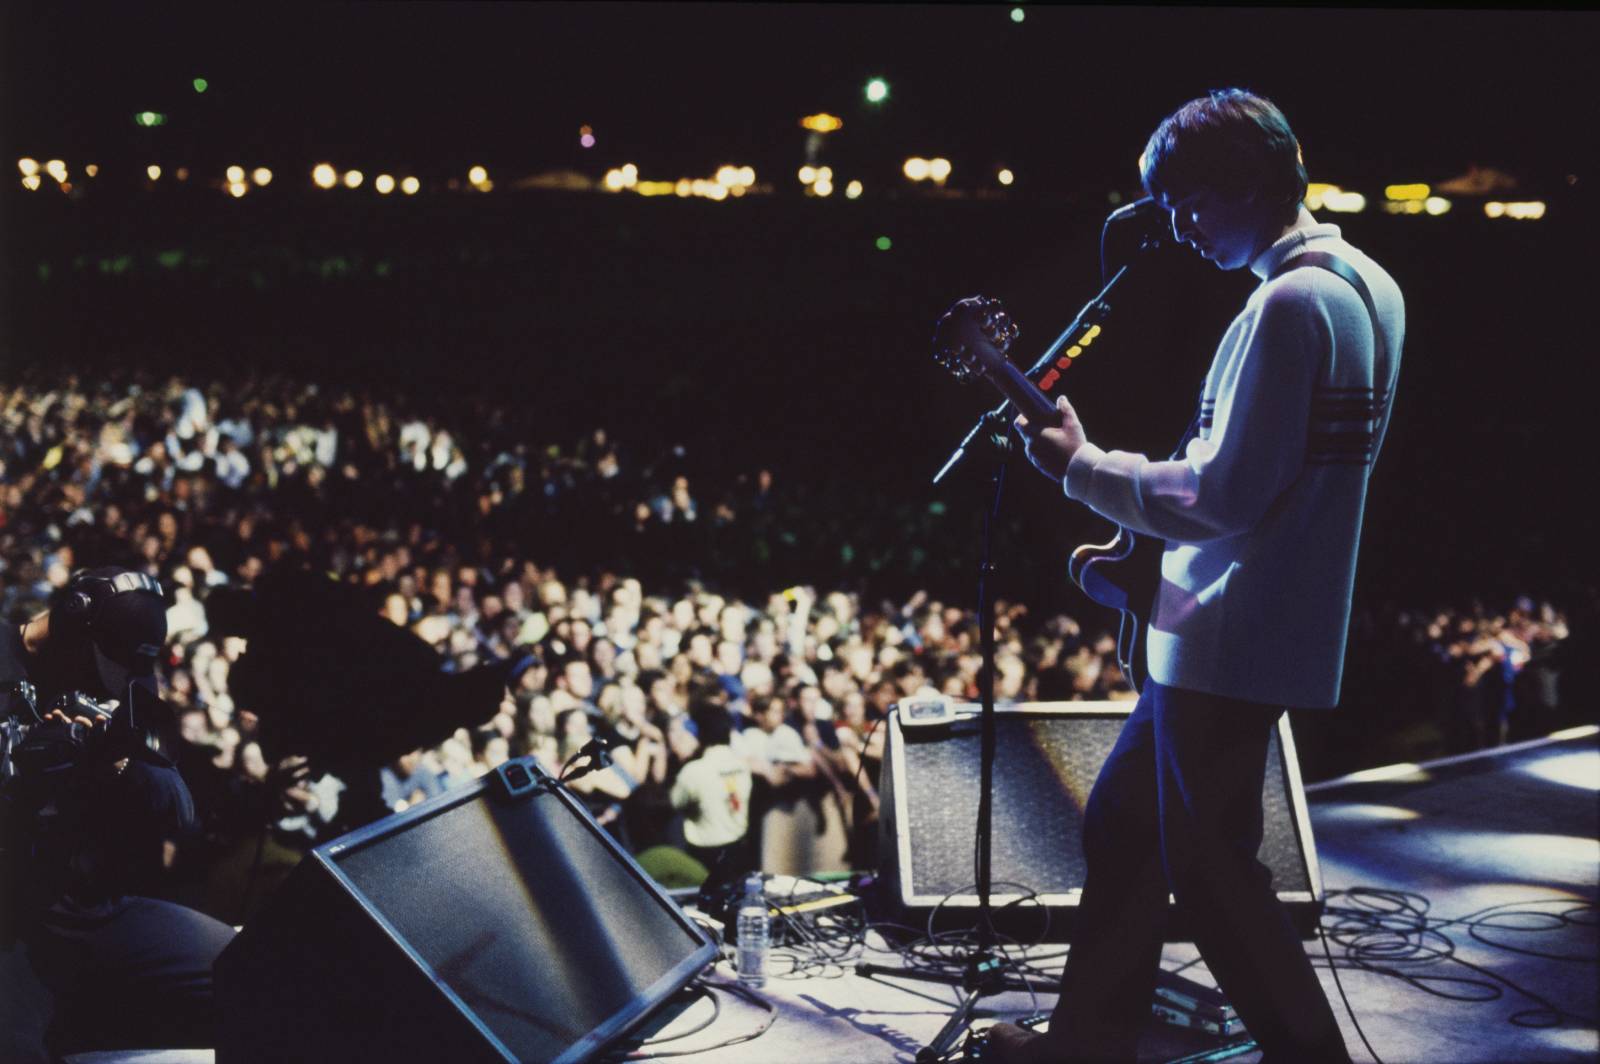 RECENZE: Nechte zpívat Oasis. Nový dokument vás přenese zpět do devadesátek